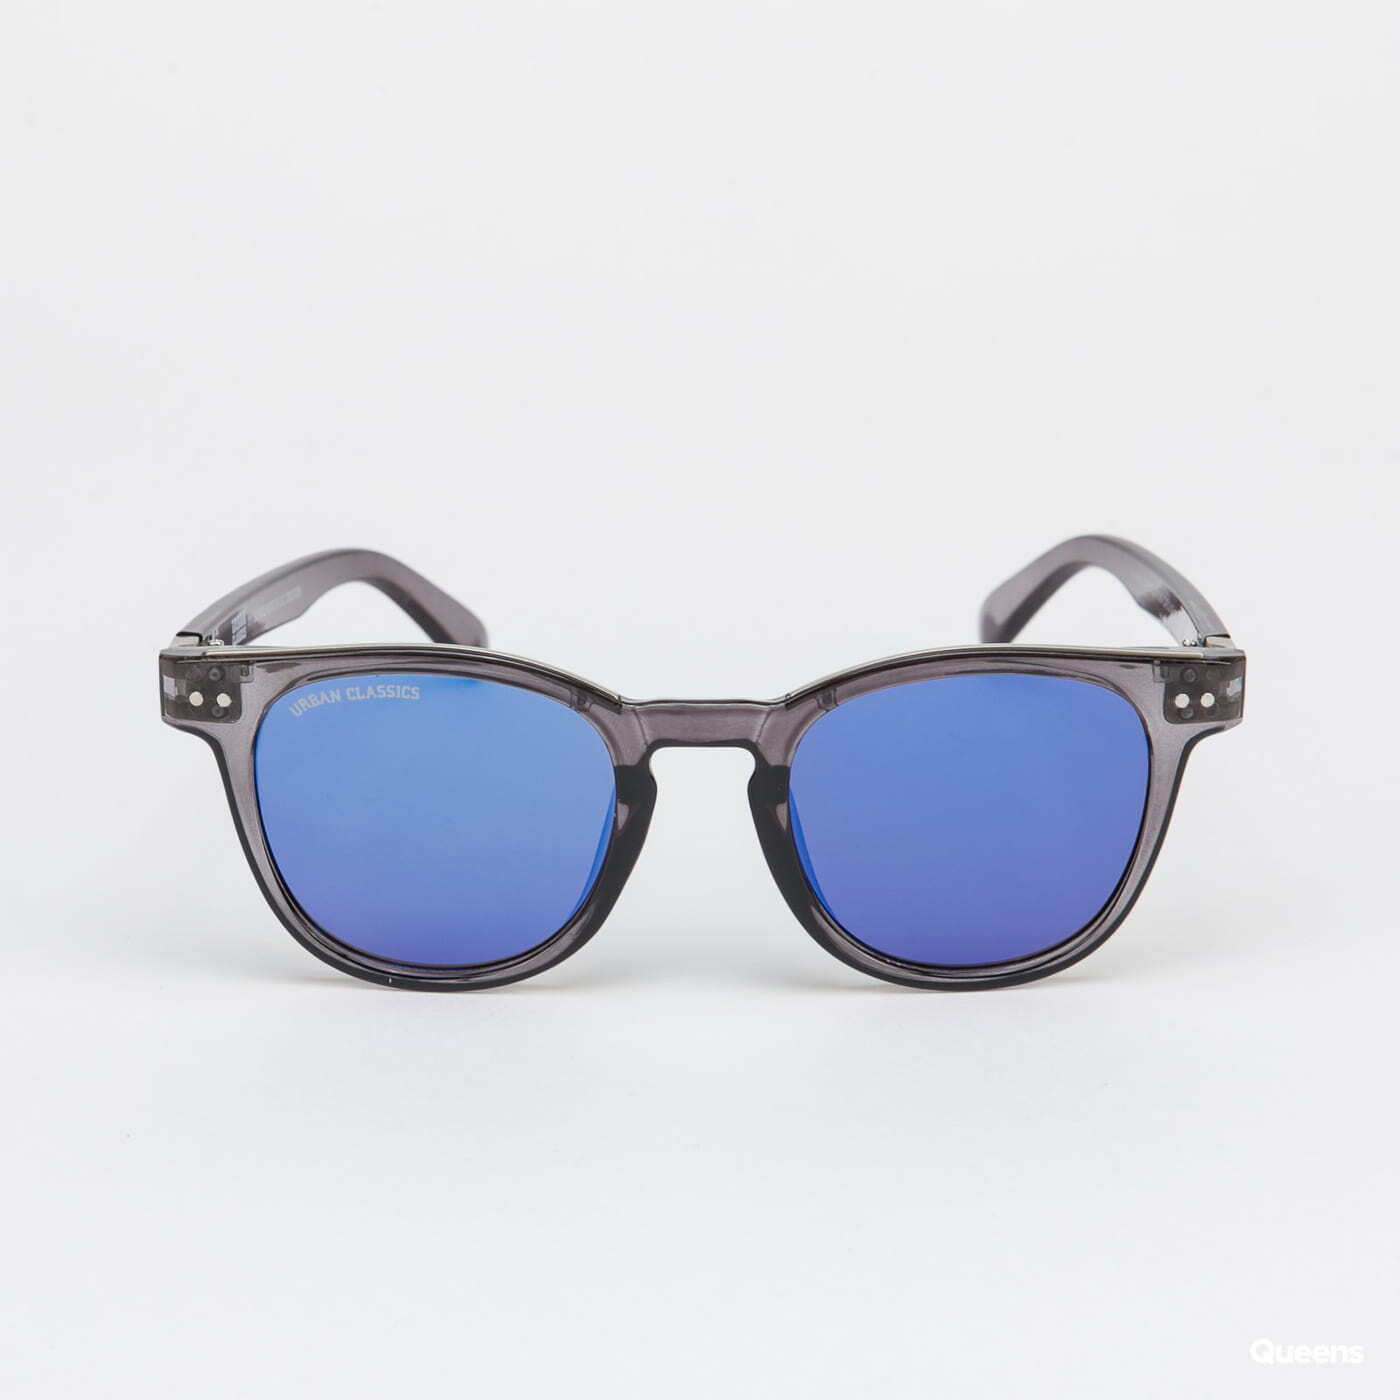 | Urban UC Silver Sunglasses 111 Classics Sunglasses Queens Grey/